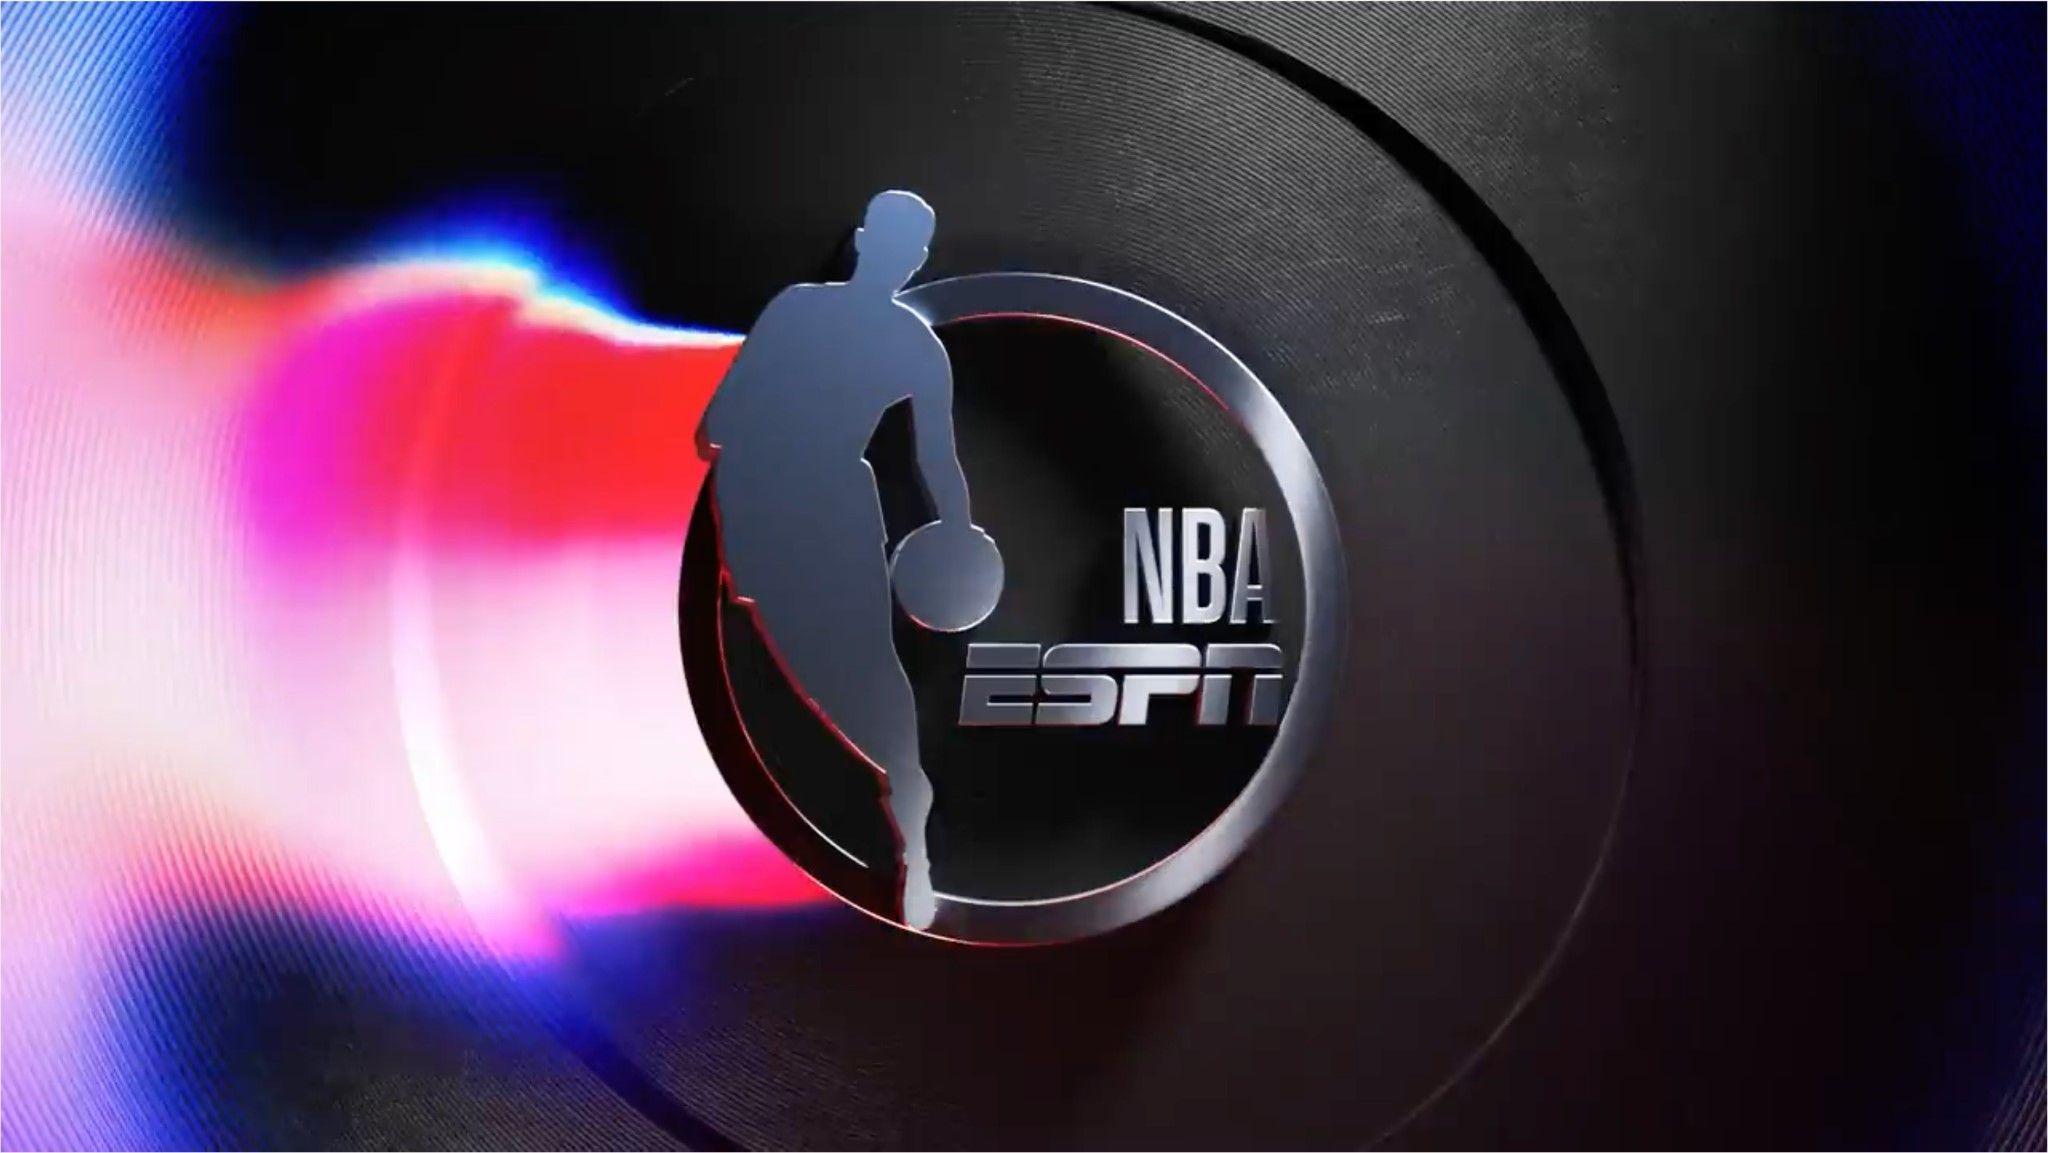 O pulso do desporto: A cobertura dinâmica em direto do ESPN 3